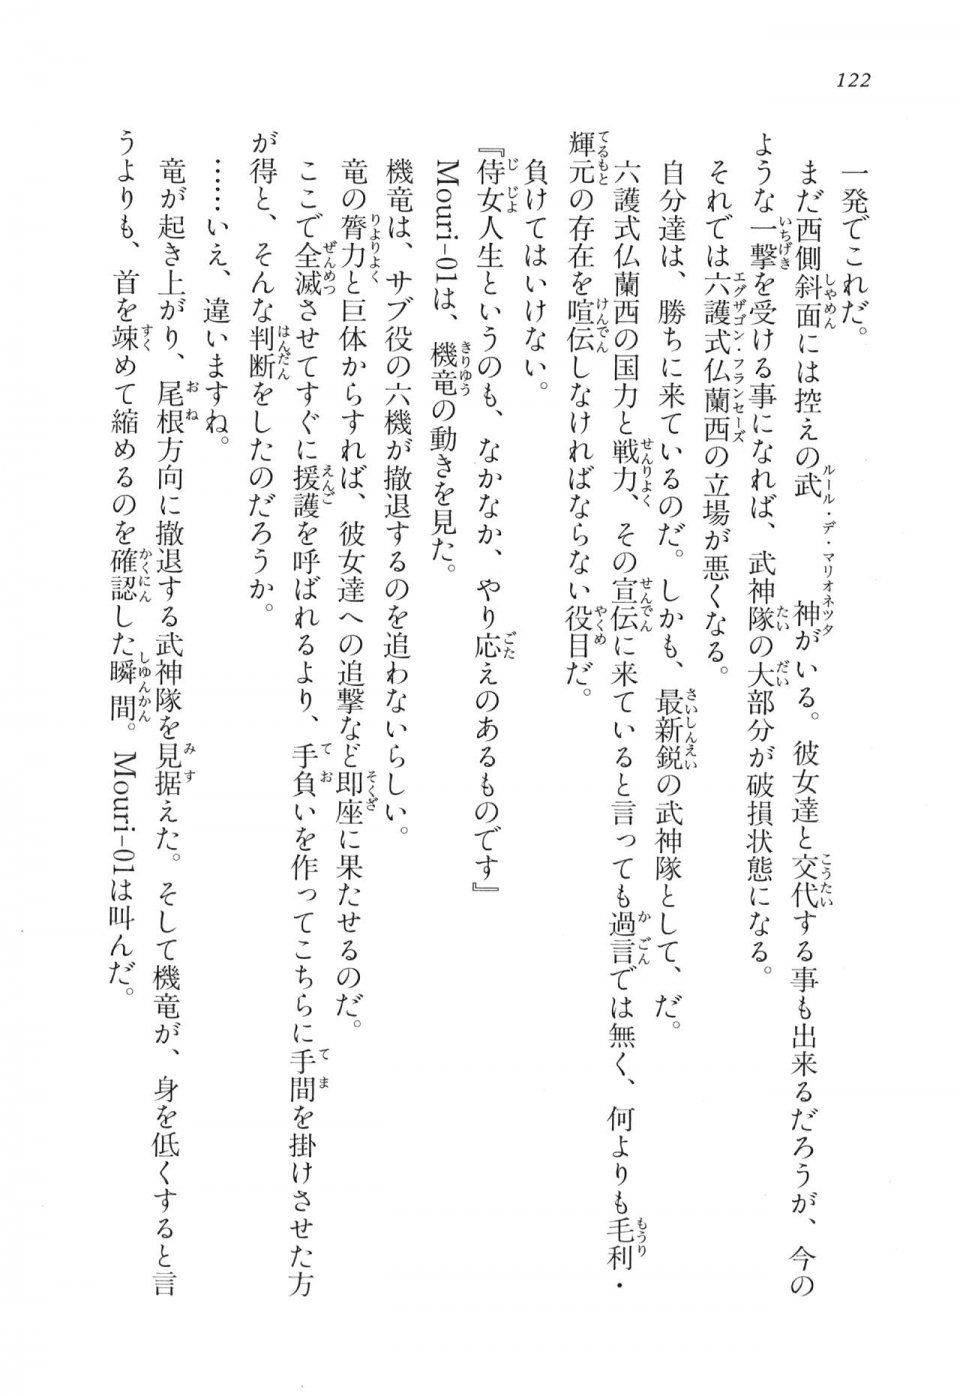 Kyoukai Senjou no Horizon LN Vol 17(7B) - Photo #122